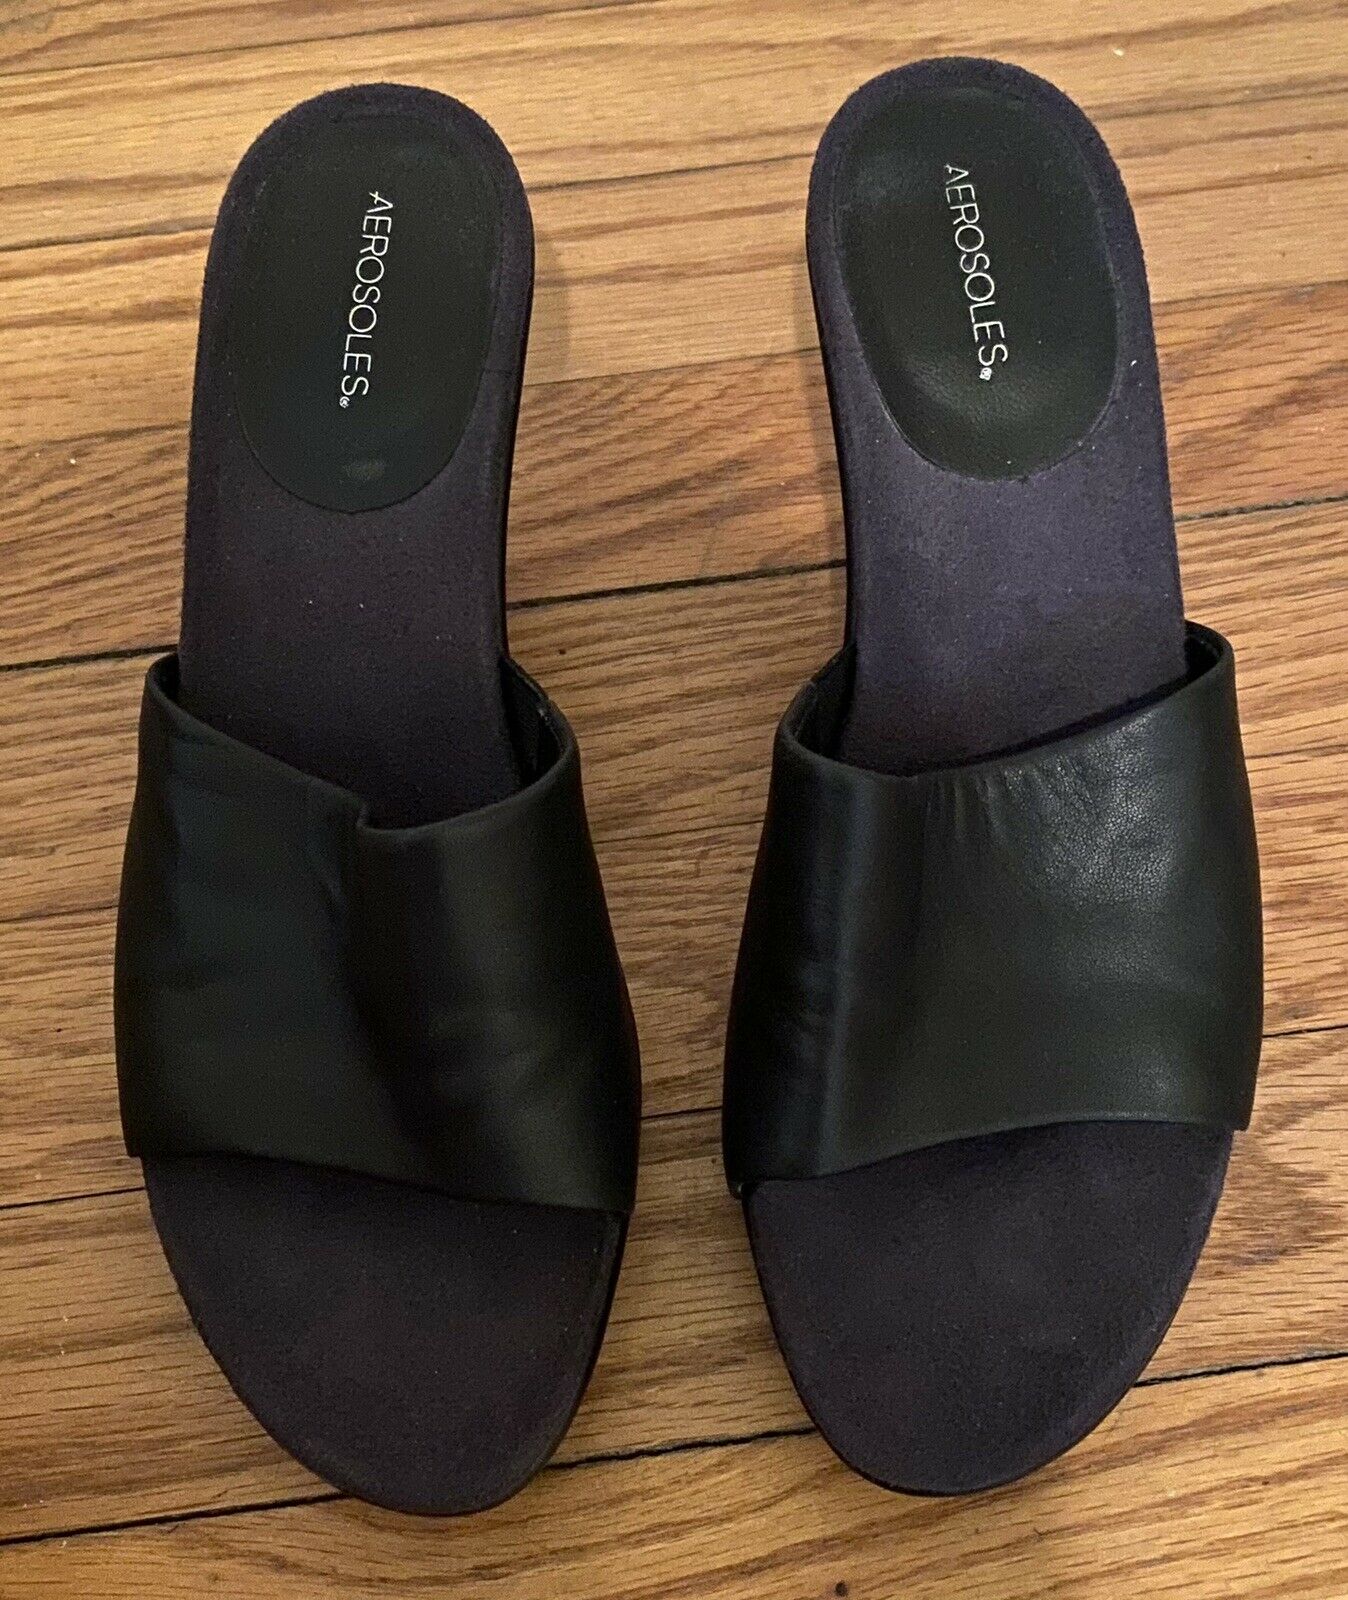 aerosoles women’s shoes sandals heel slip on black size 7.5 Excellent Condition